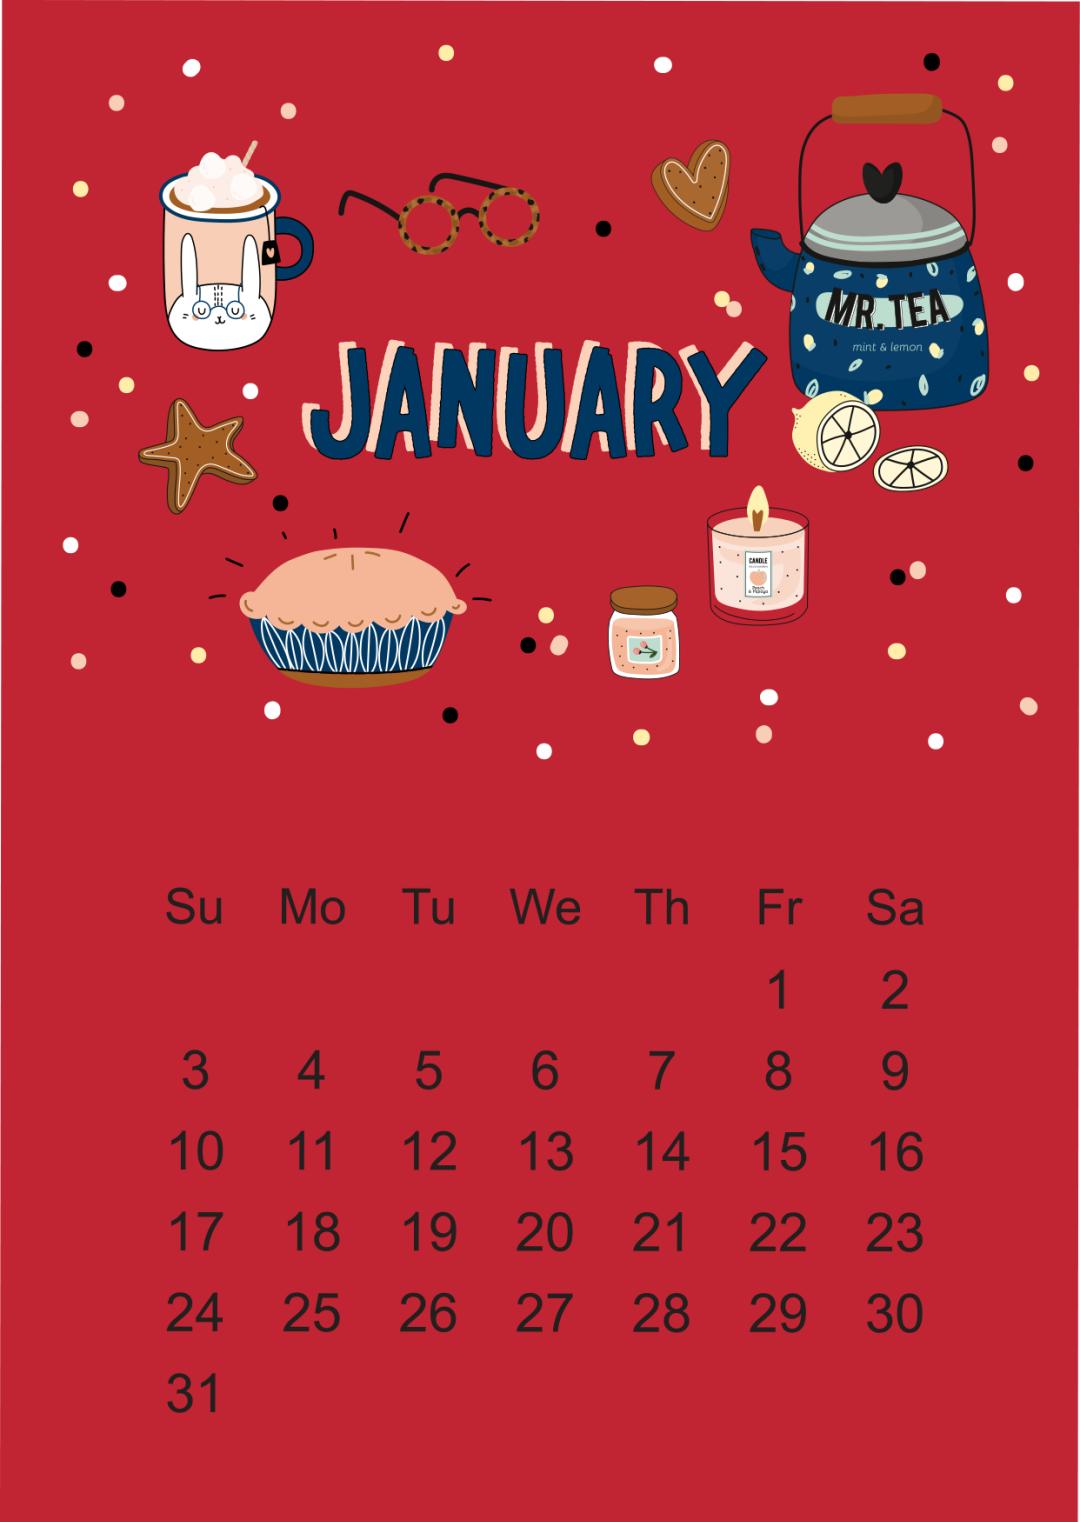 上海文联1月公共活动日历